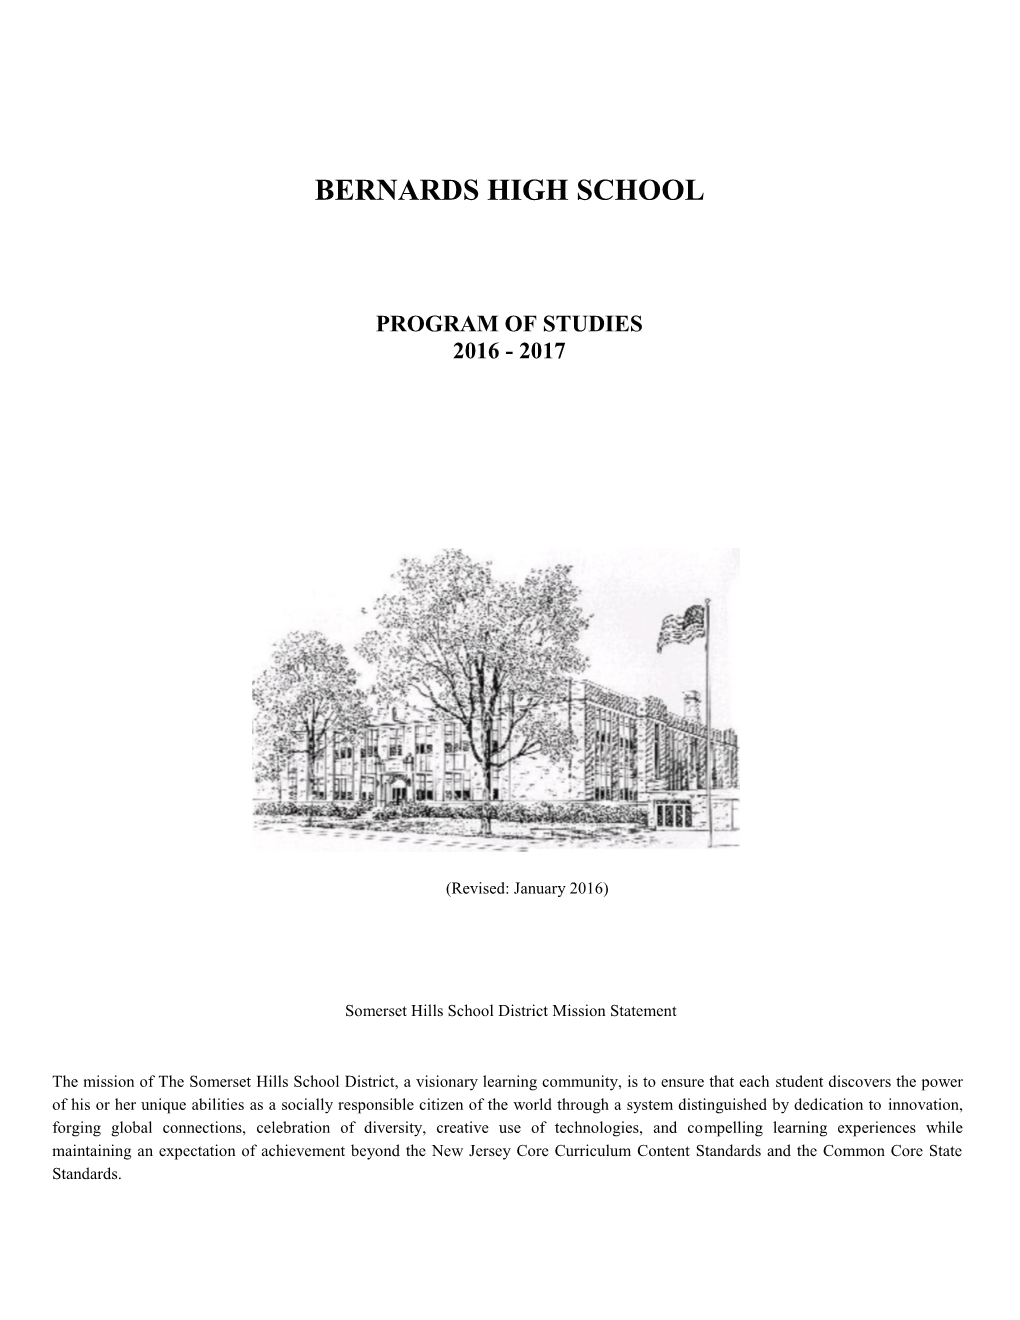 Bernards High School